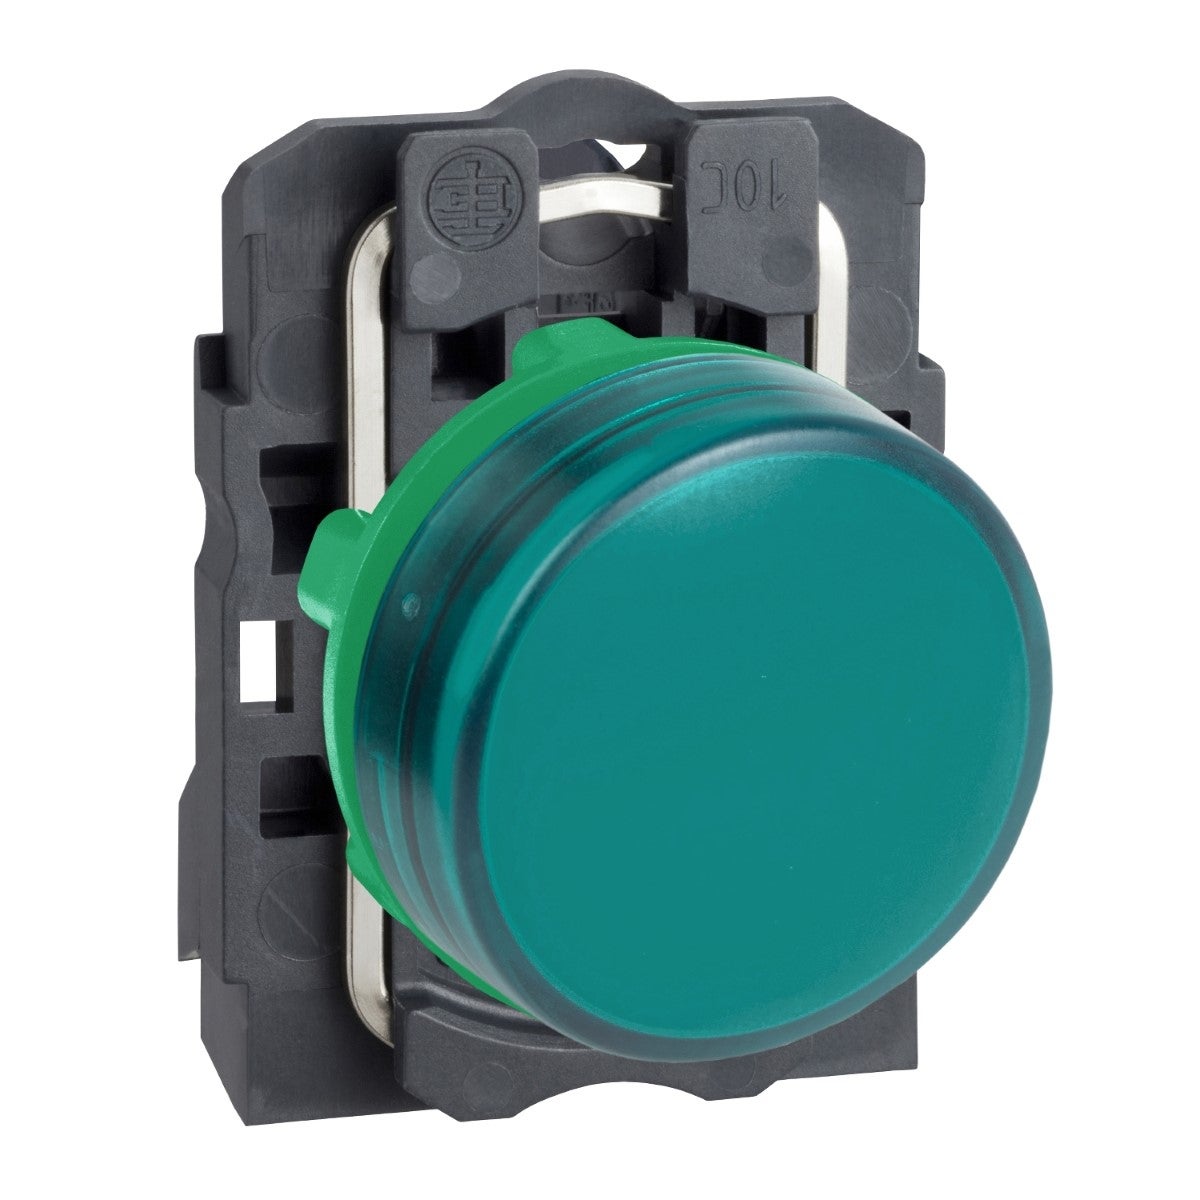 Pilot light, plastic, green, Ã˜22, plain lens with integral LED, 24 V AC/DC